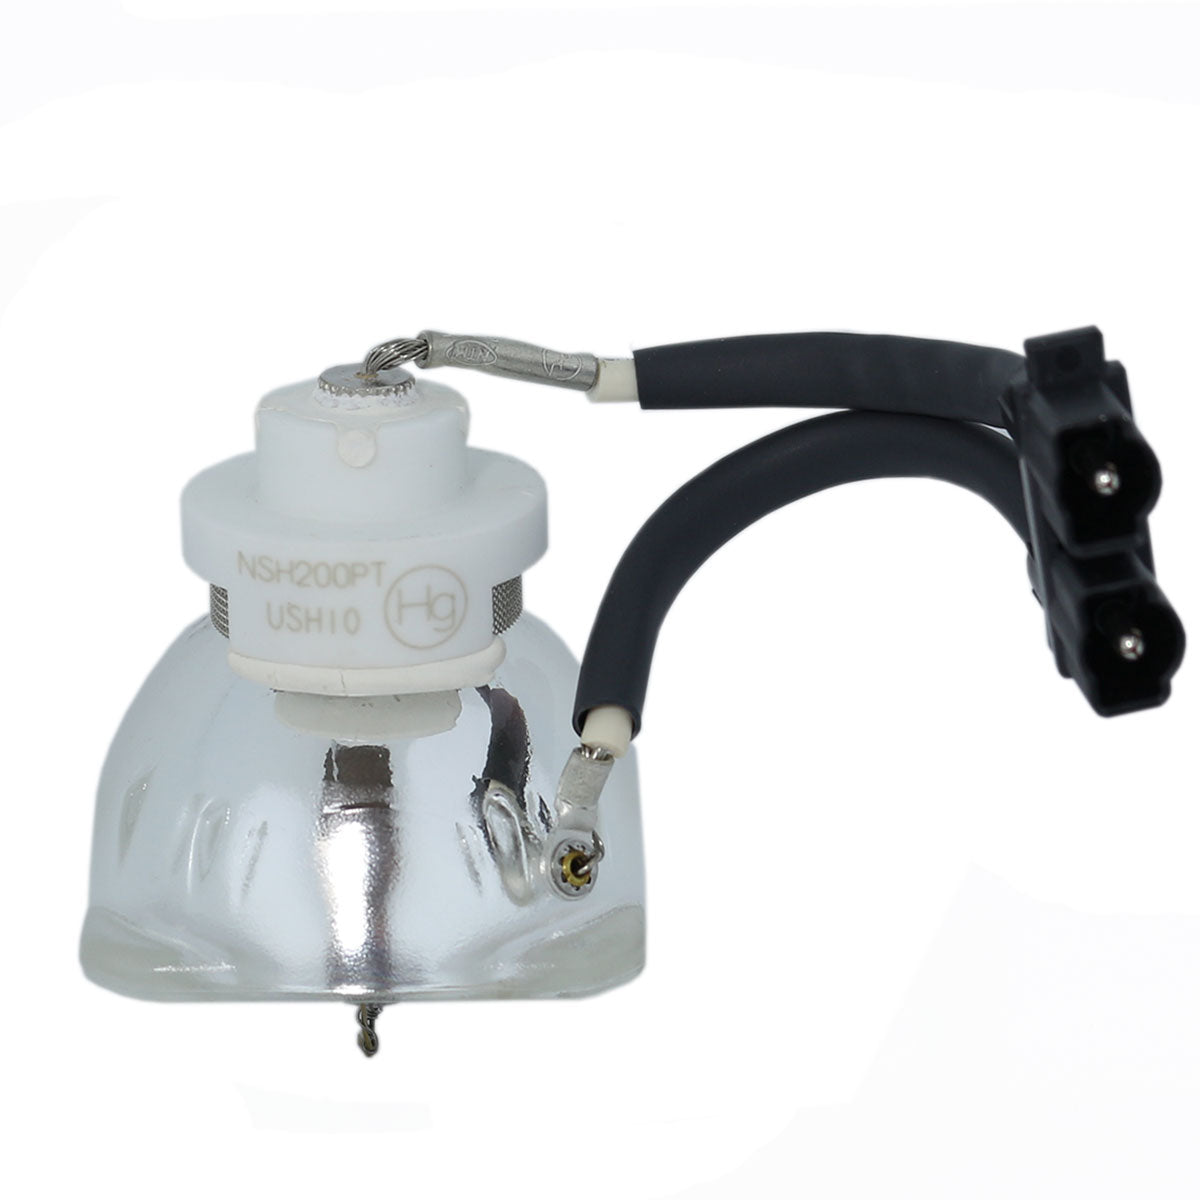 Dell 310-6472 Ushio Projector Bare Lamp